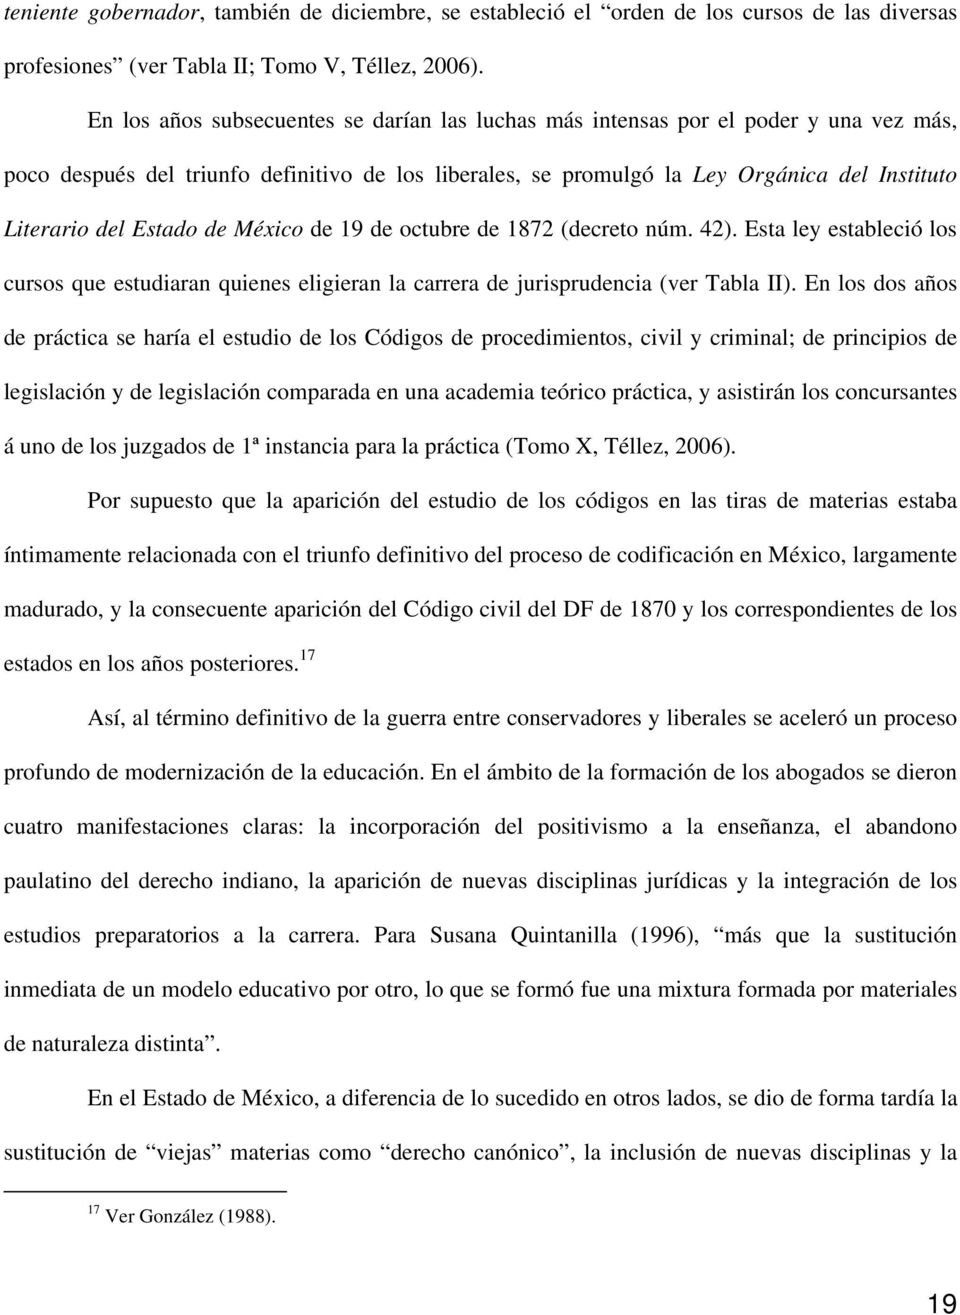 Estado de México de 19 de octubre de 1872 (decreto núm. 42). Esta ley estableció los cursos que estudiaran quienes eligieran la carrera de jurisprudencia (ver Tabla II).